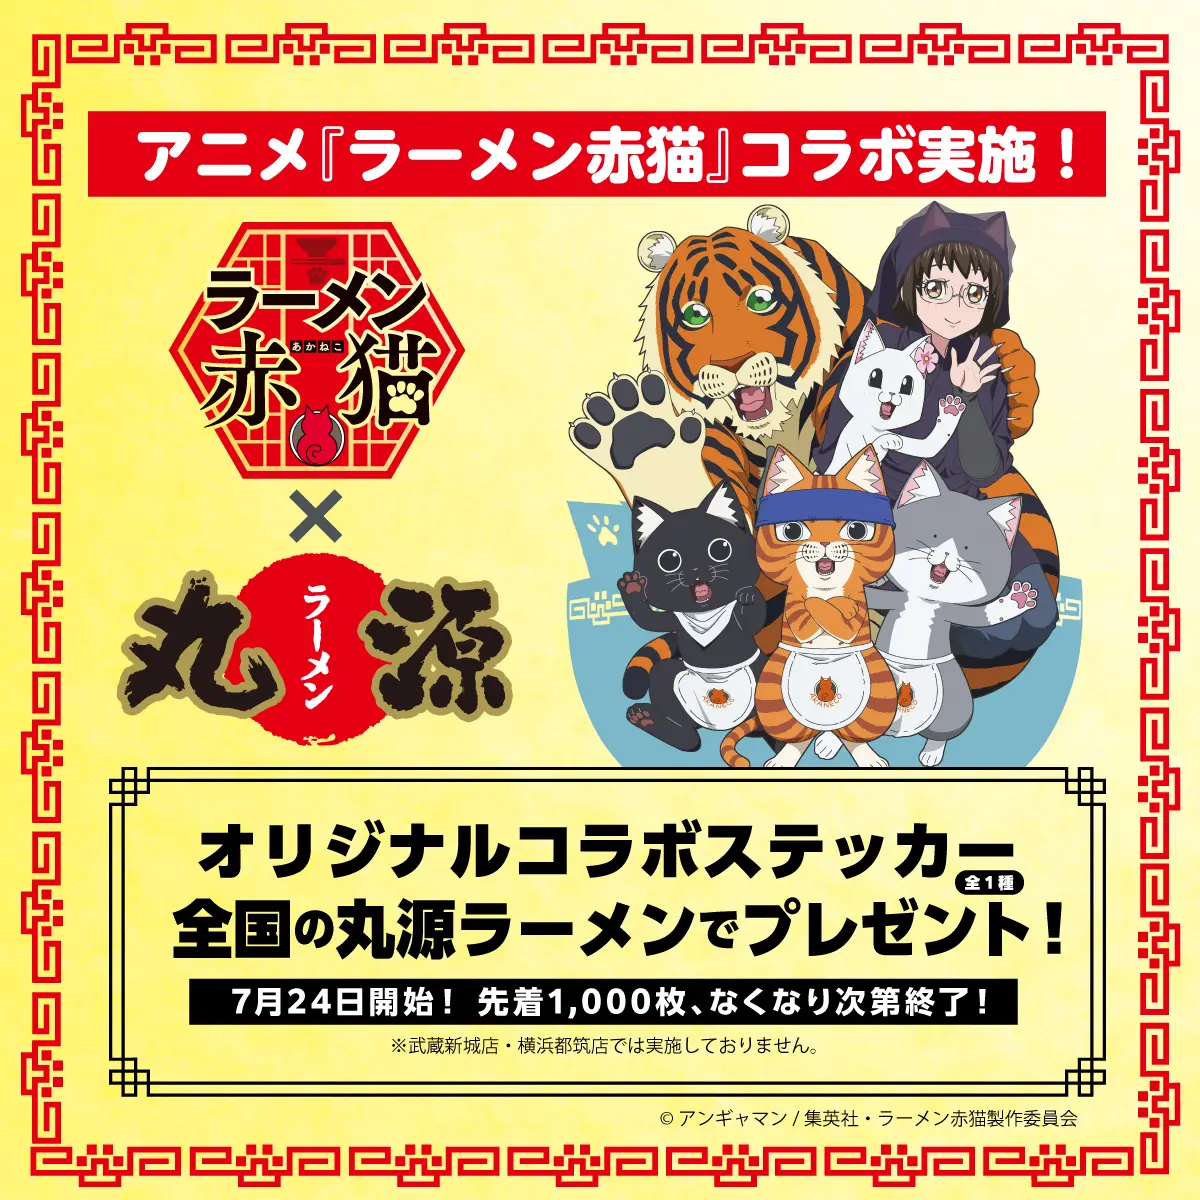 TVアニメ『ラーメン赤猫』のオリジナルコラボステッカーがもらえる！コラボキャンペーンを7月24日(水)から開催